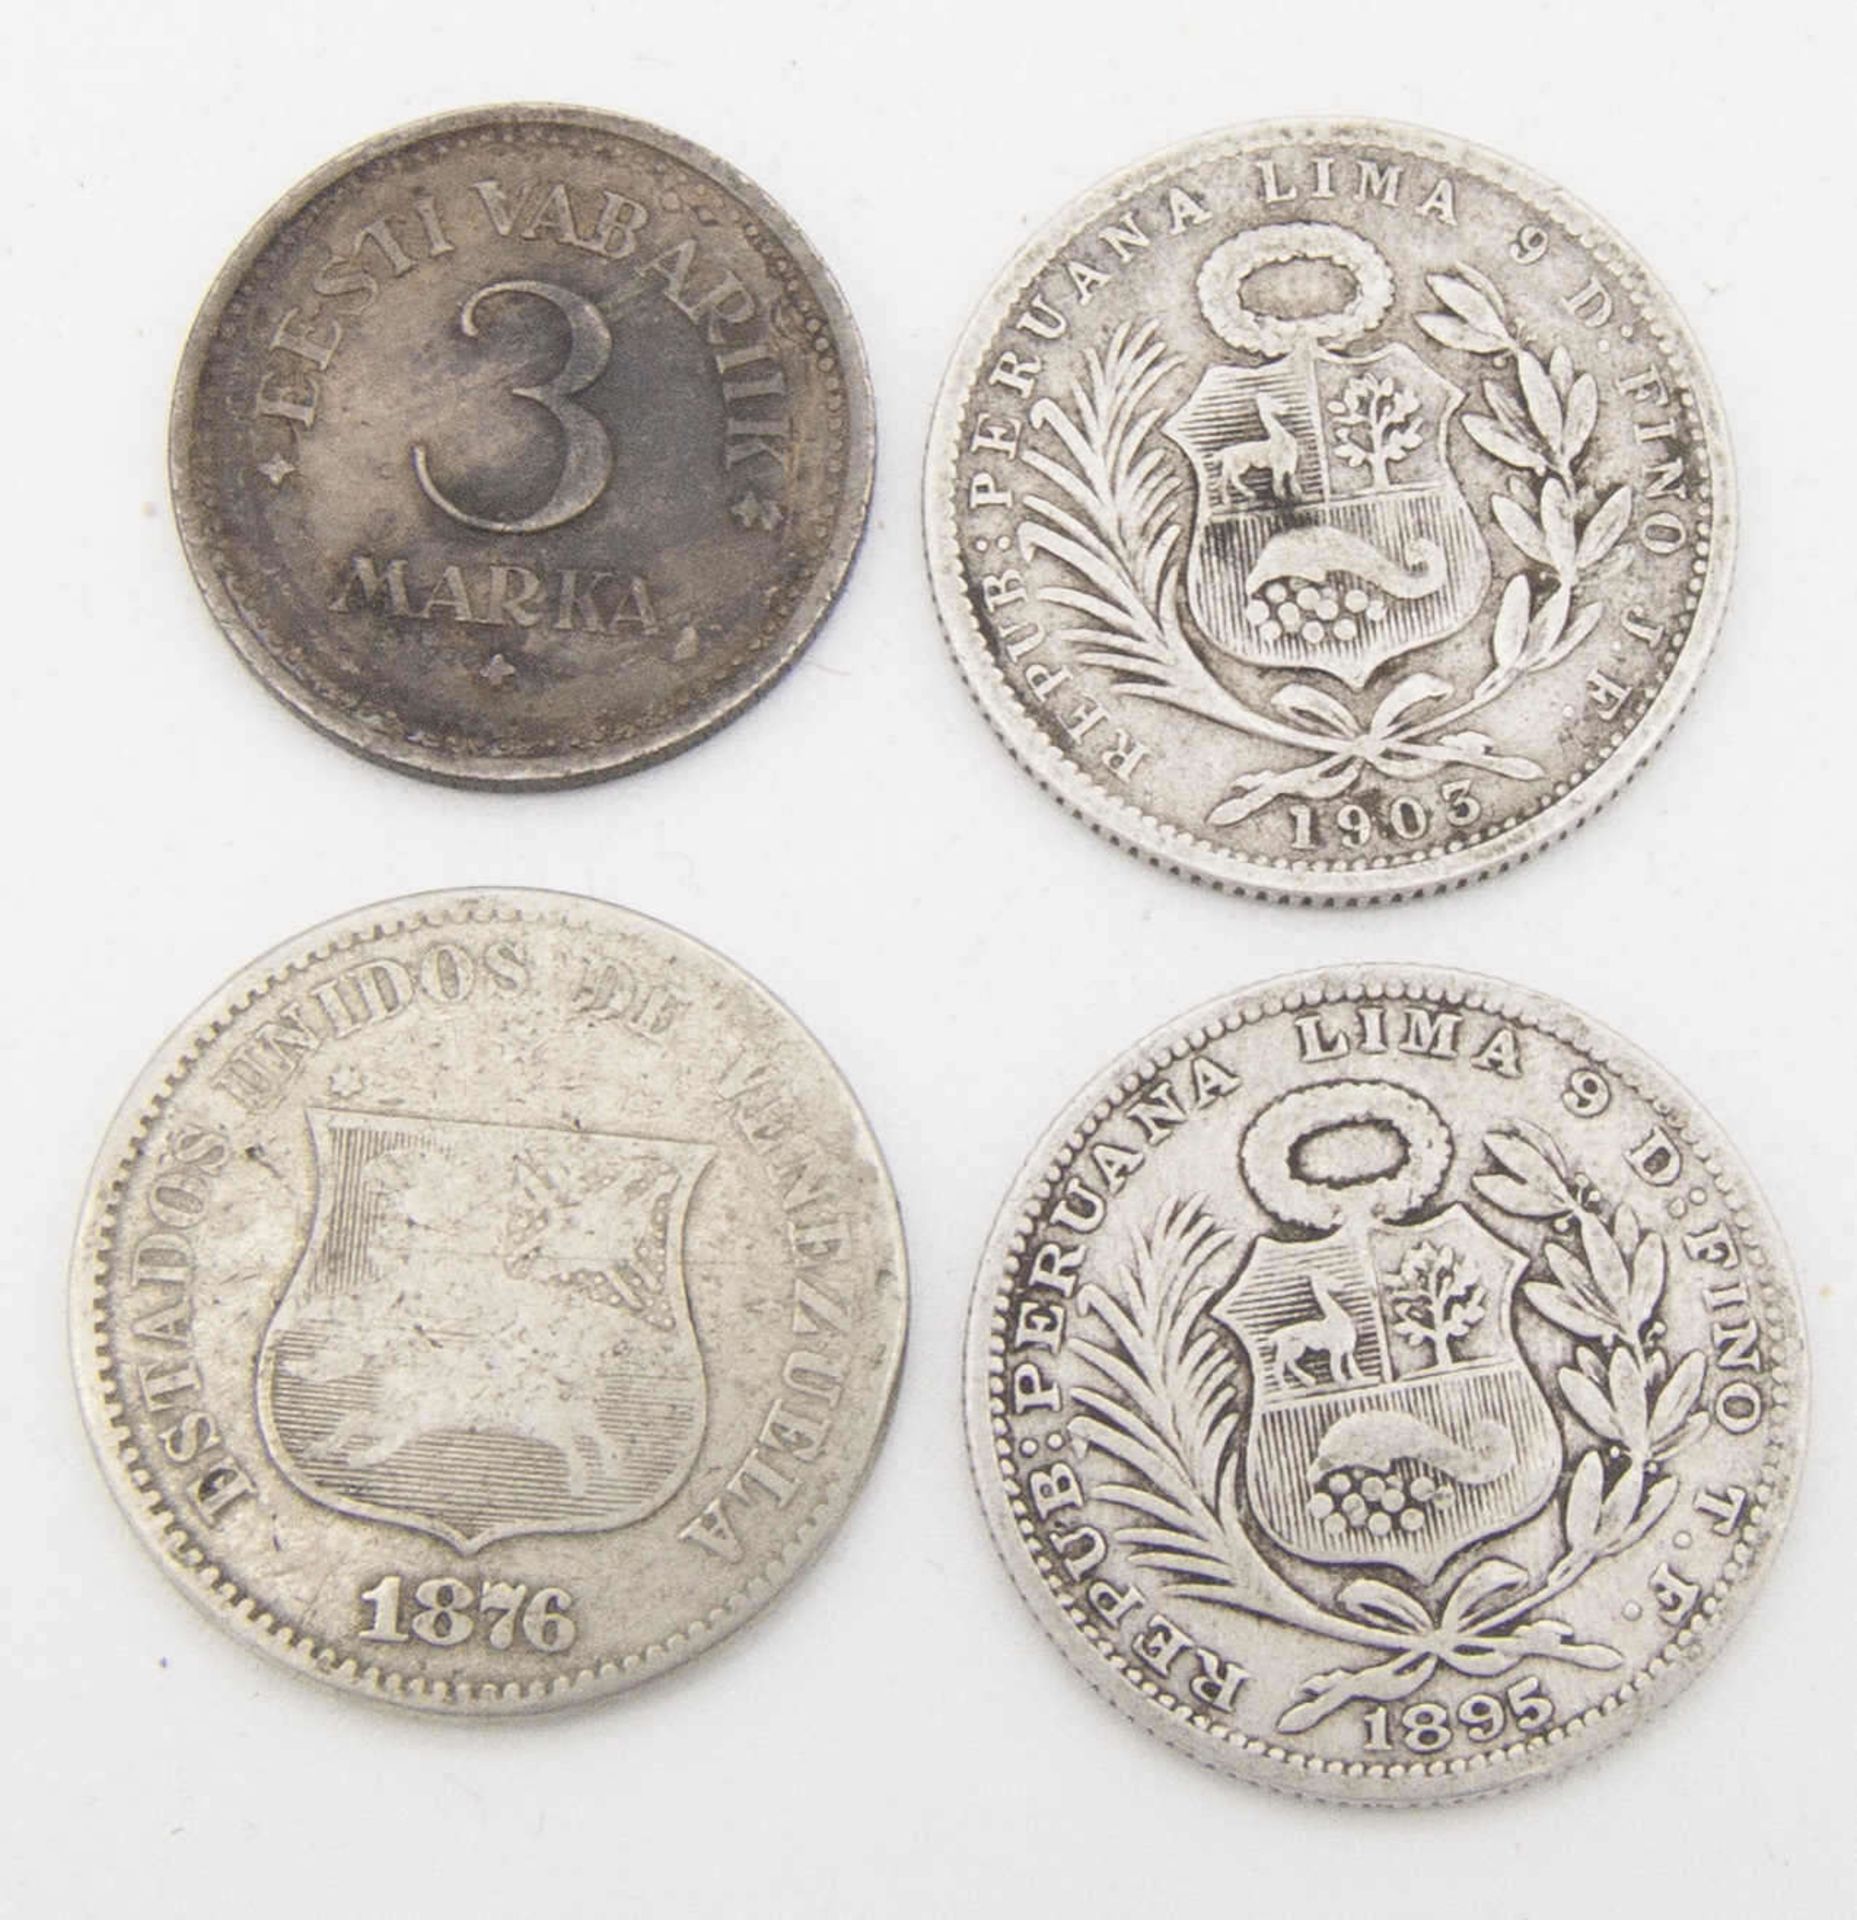 Lot Silbermünzen, bestehend aus: Peru 1895, 1903 1/5 Sol, Venezuela 1876 2 Centavos. Dazu Estland